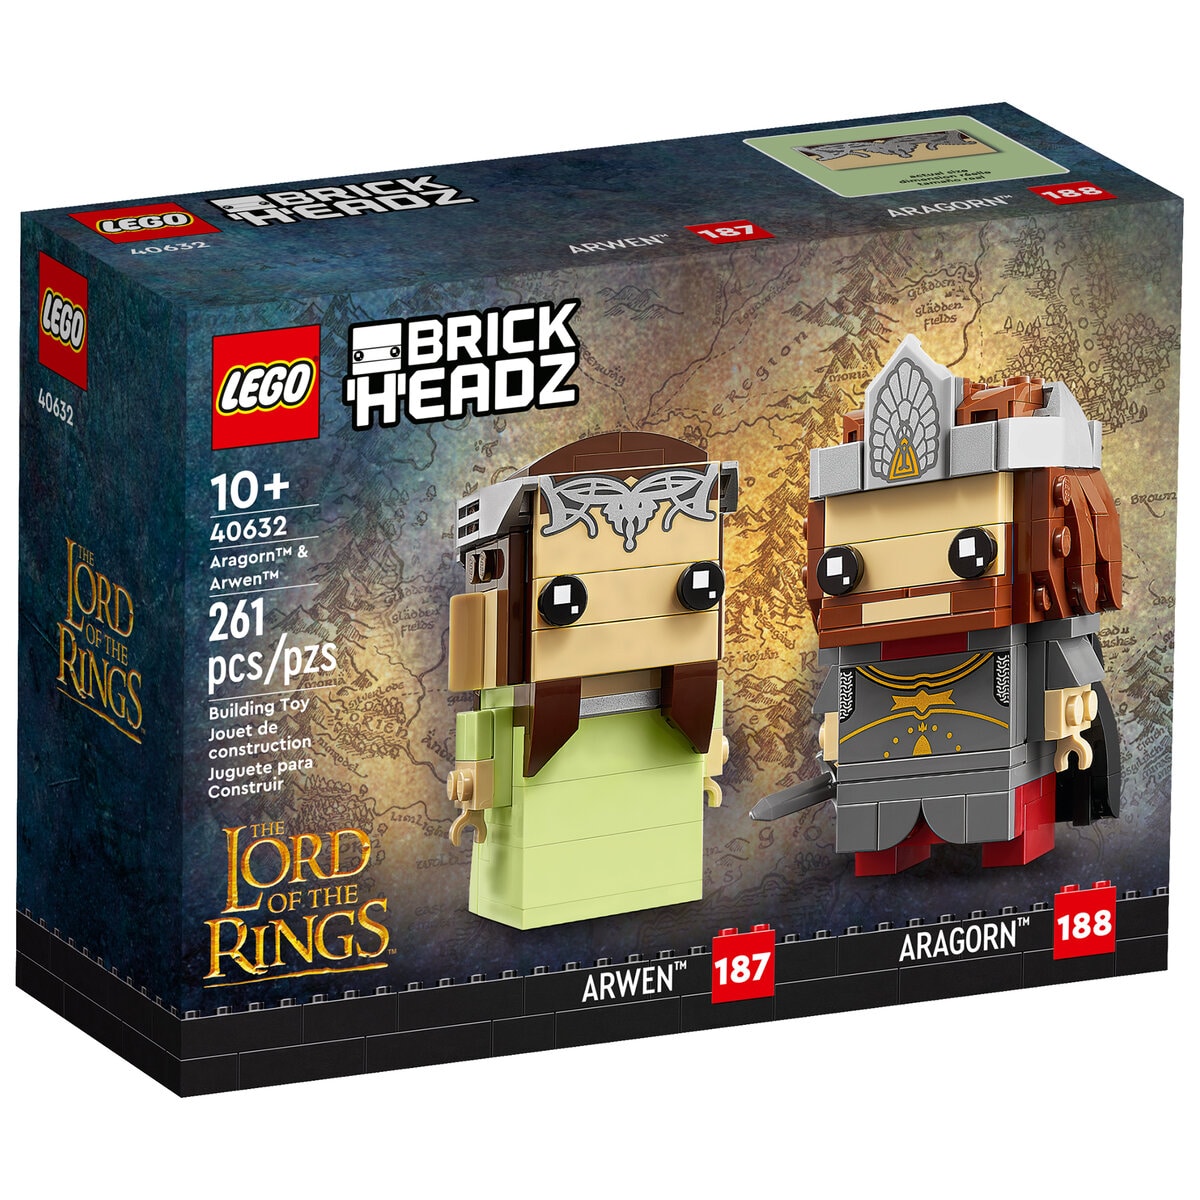 LEGO Le Seigneur des Anneaux et Le Hobbit retirés de la vente